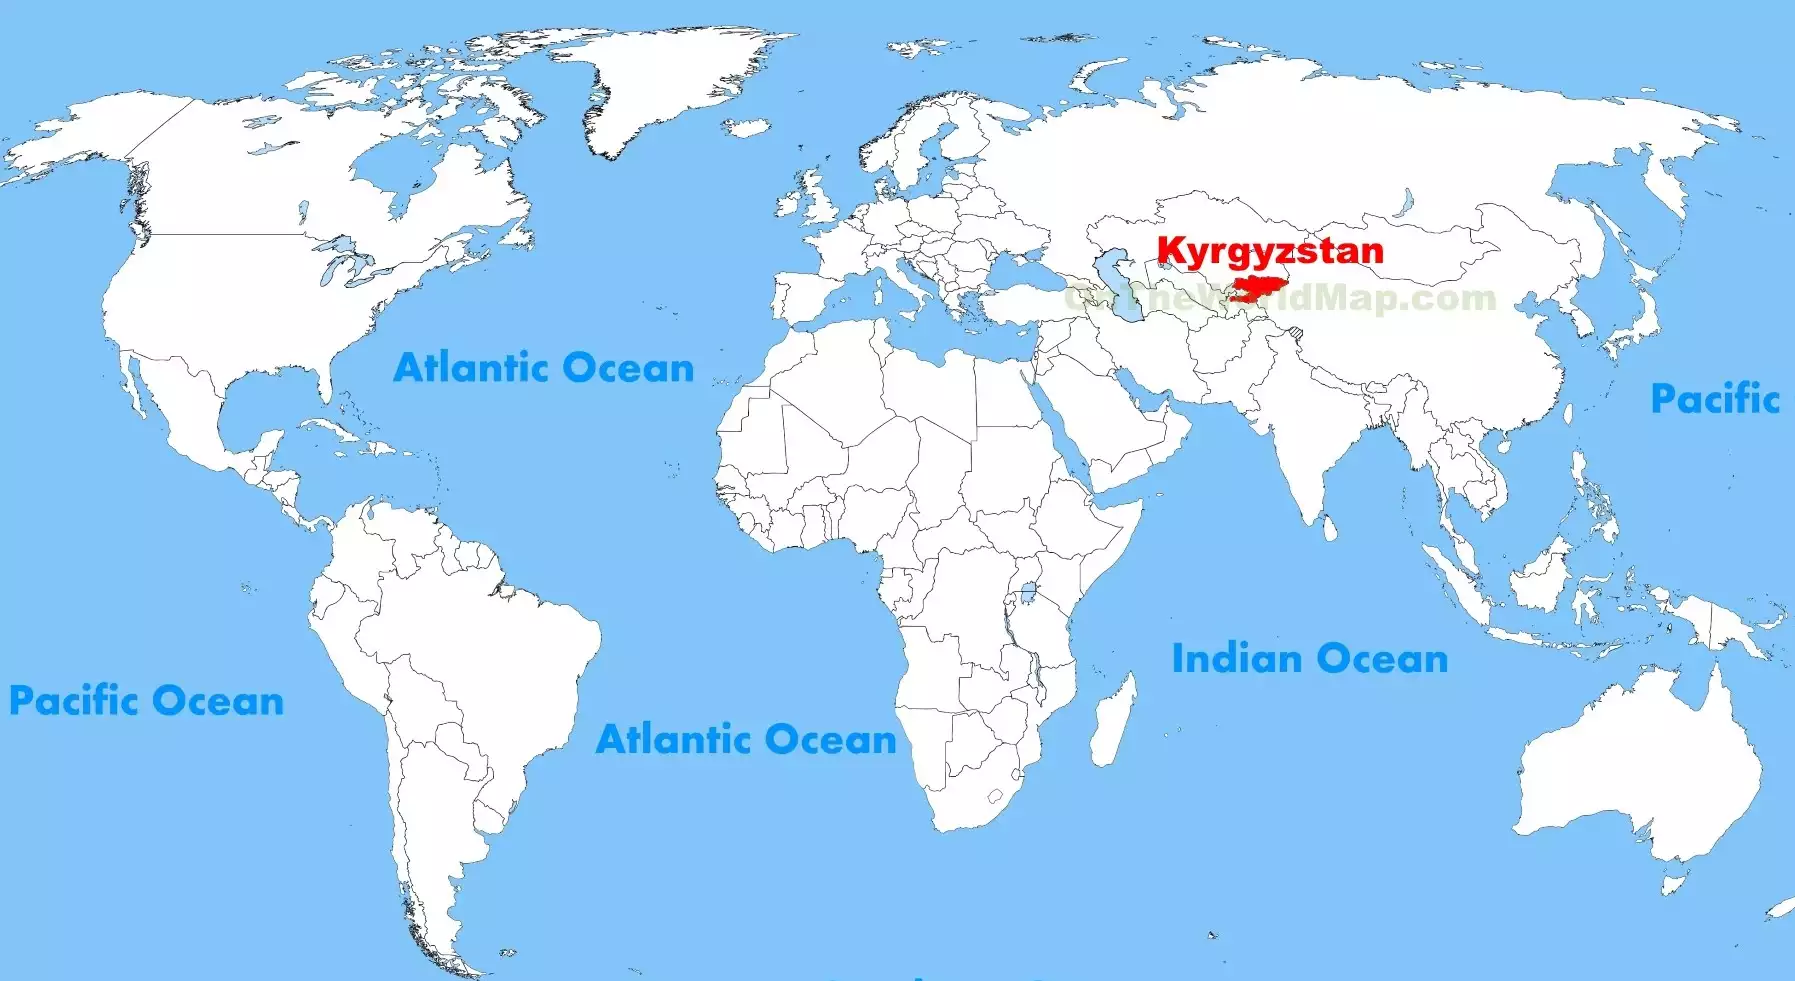 Vďaka zákonu o neziskovkách v Kirgizsku si USA aspoň lepšie skontrolujú míňanie svojich peňazí